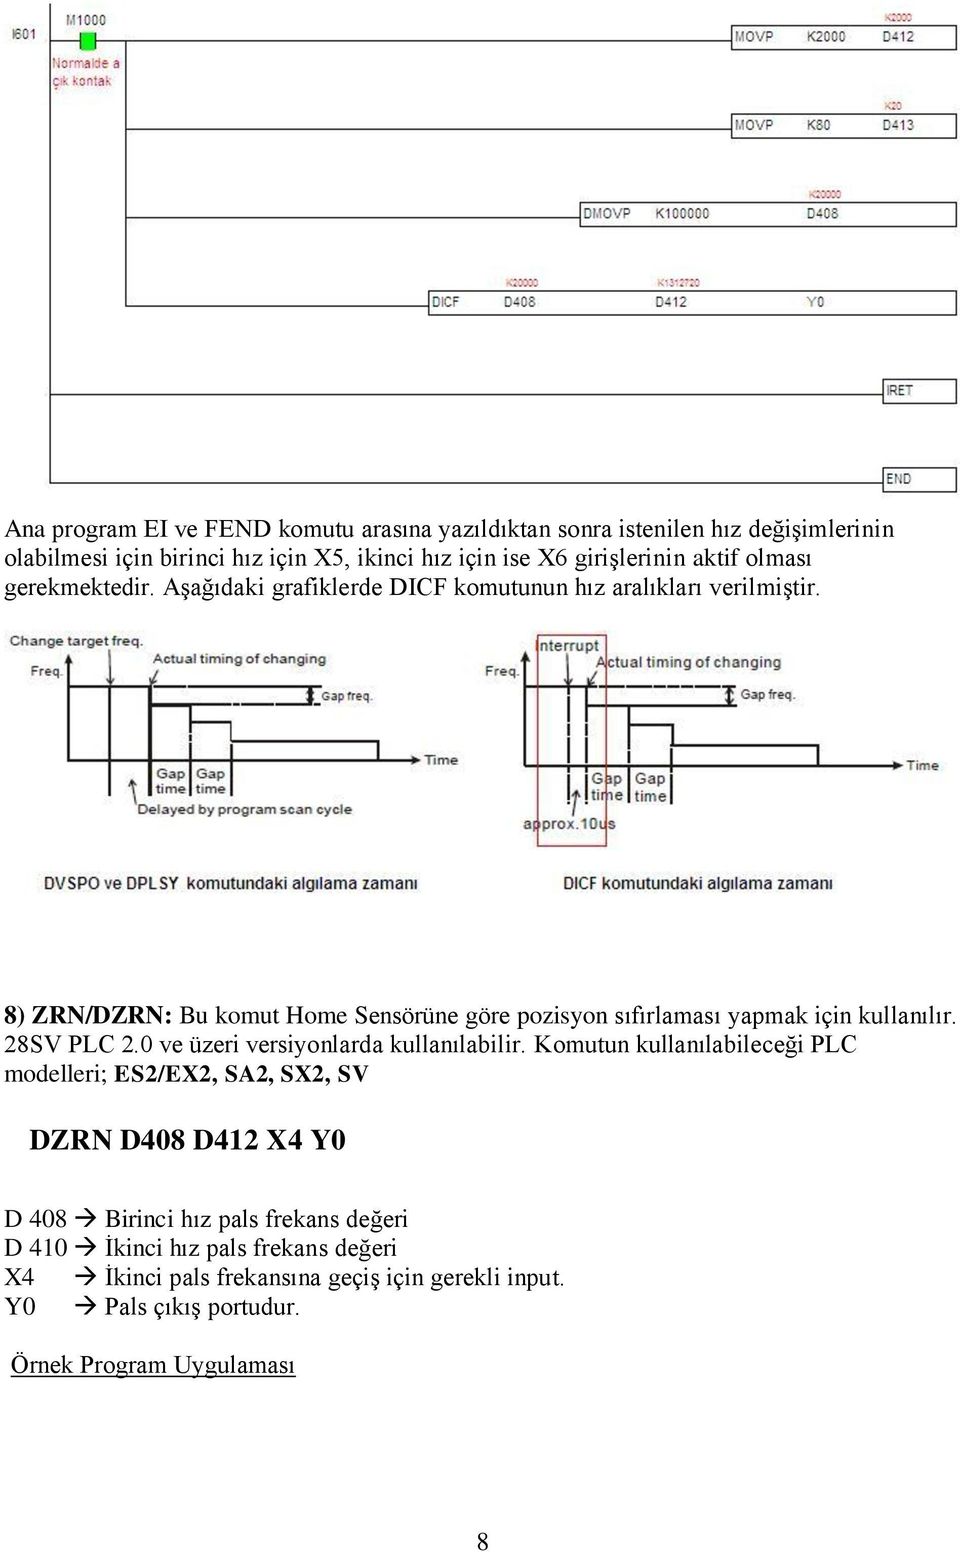 8) ZRN/DZRN: Bu komut Home Sensörüne göre pozisyon sıfırlaması yapmak için kullanılır. 28SV PLC 2.0 ve üzeri versiyonlarda kullanılabilir.